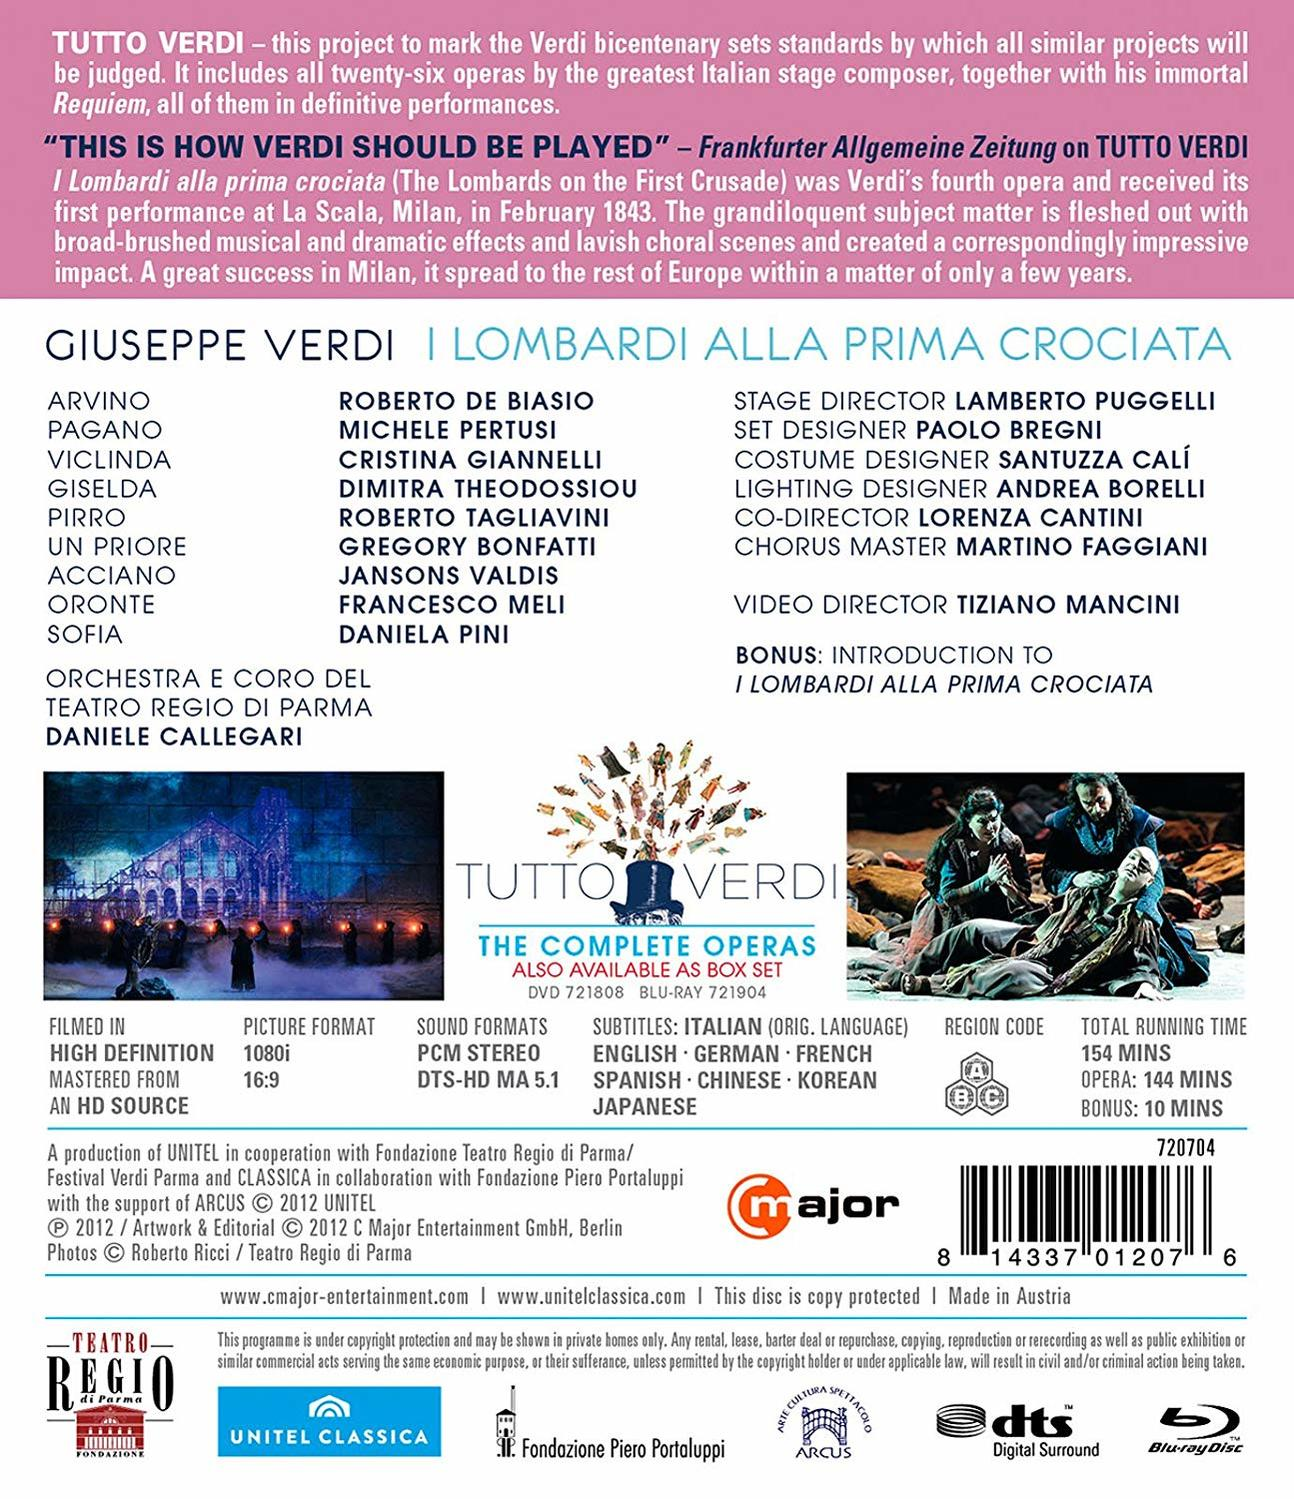 I - Regio (Blu-ray) croaciata Mariotti/Orchestra+Chorus alla Lombardi prima Teatro Torino/+ -